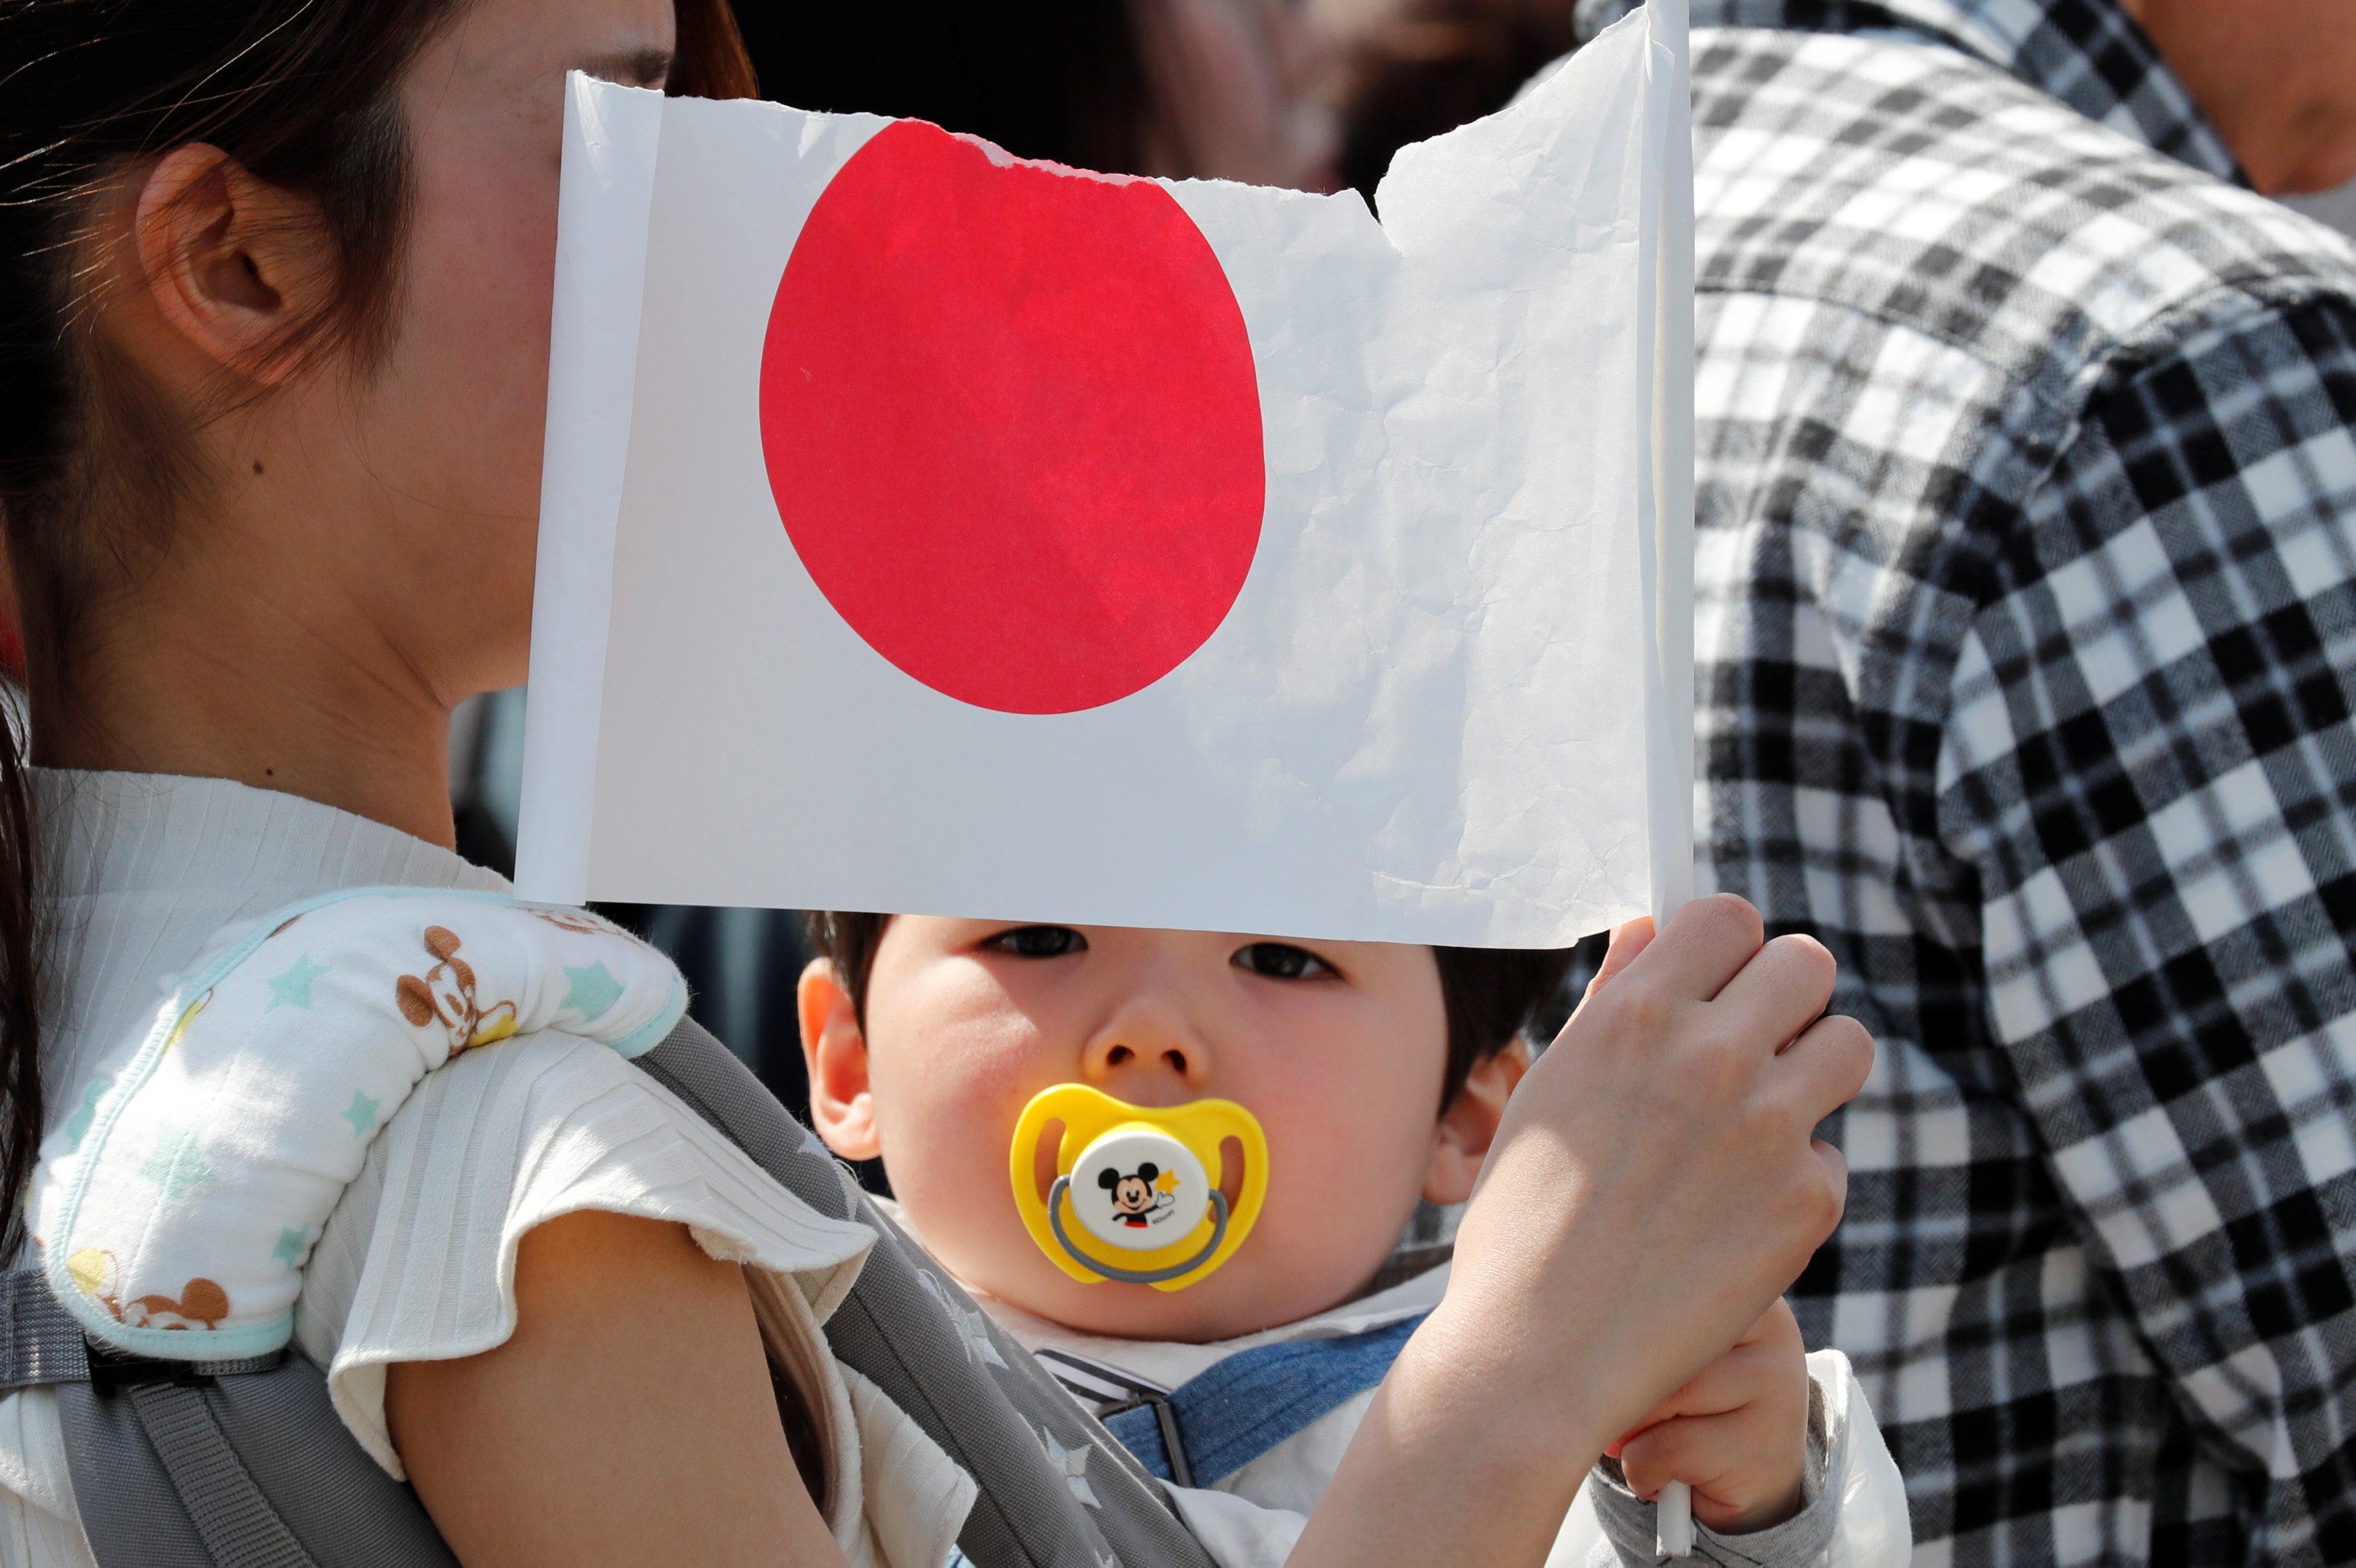 التعبير راحة جمعيه  نقص مهول في مواليد اليابان.. البلاد تسجل أضعف معدل منذ أكثر من 100 عام